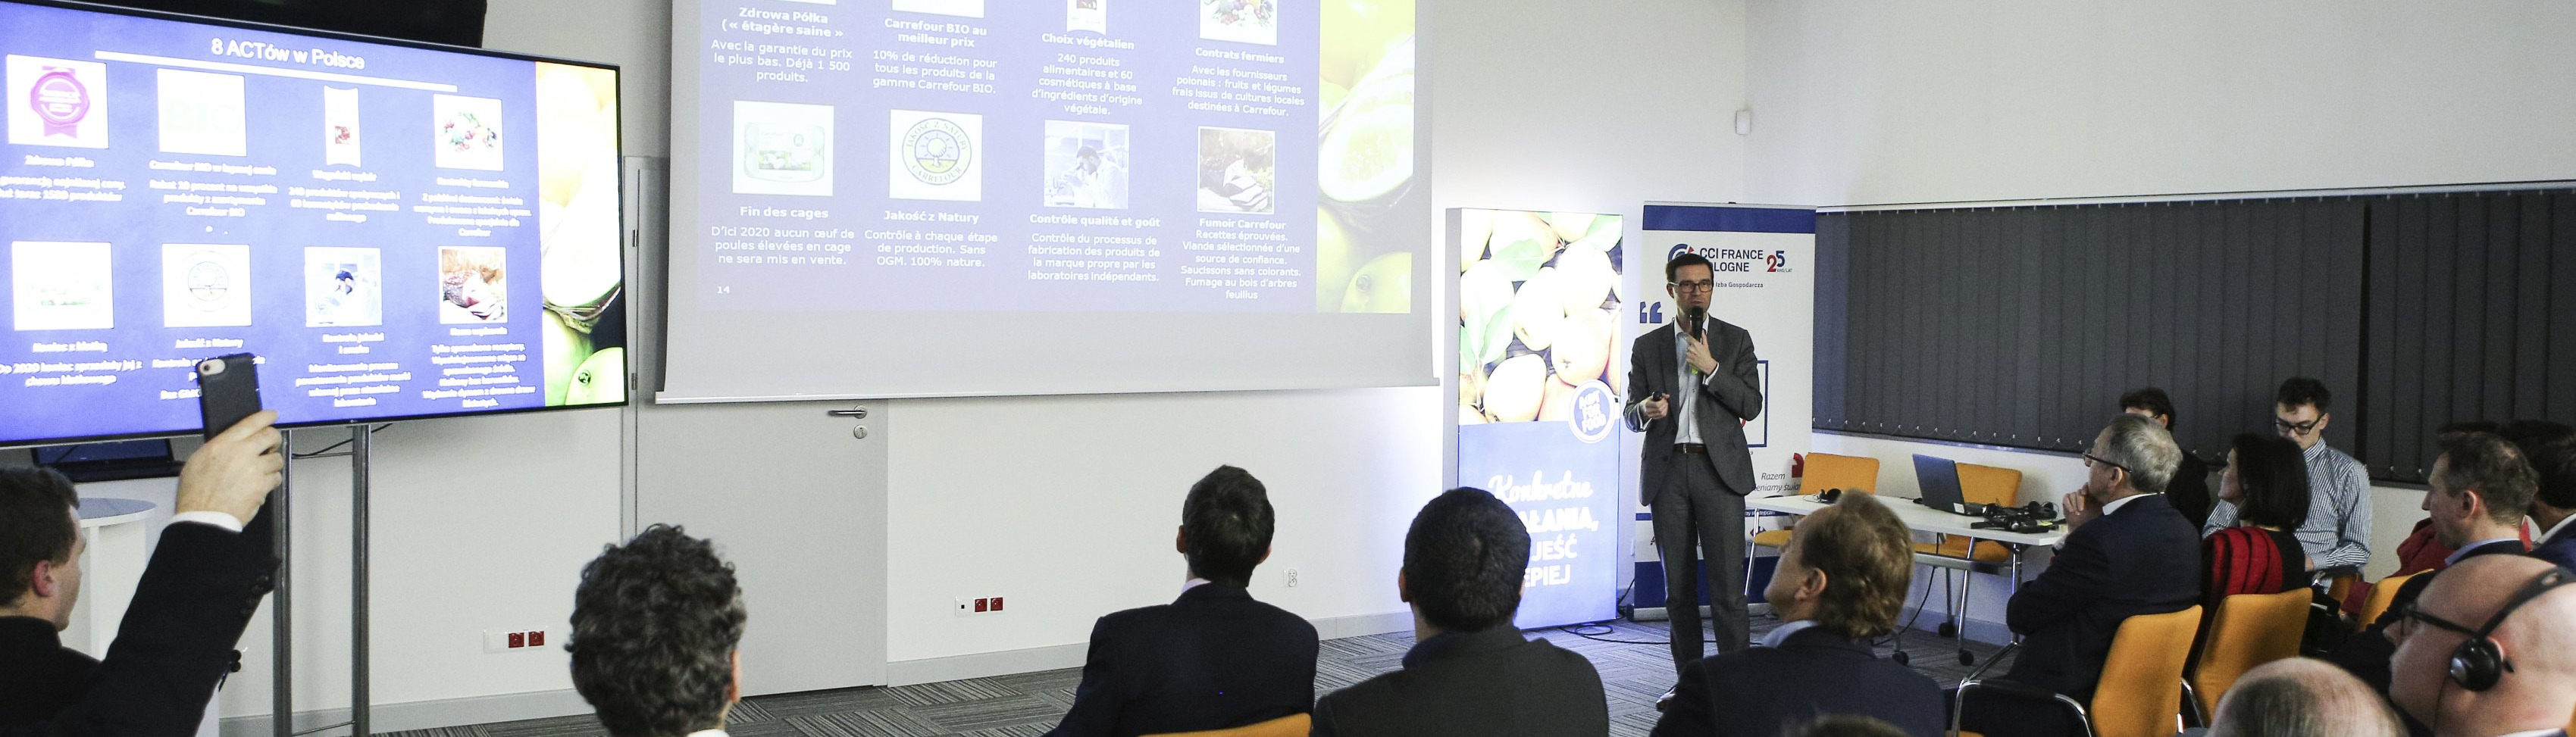 Carrefour promuje transformację żywieniową i edukuje na temat bio w środowisku biznesu francuskiego w Polsce